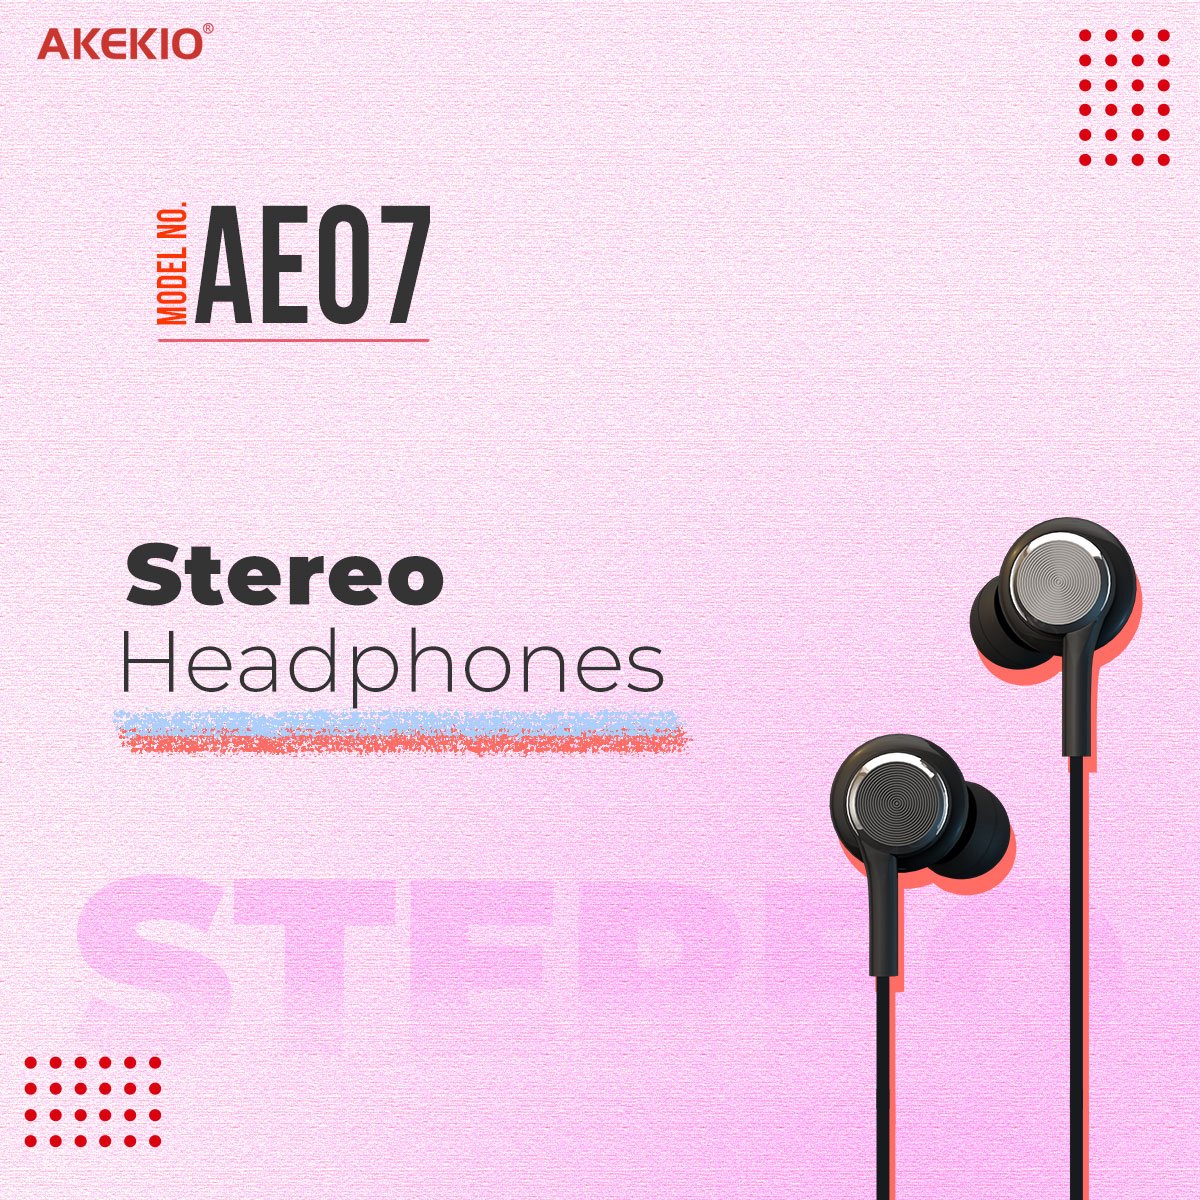 Akekio Stereo Headphones AE07